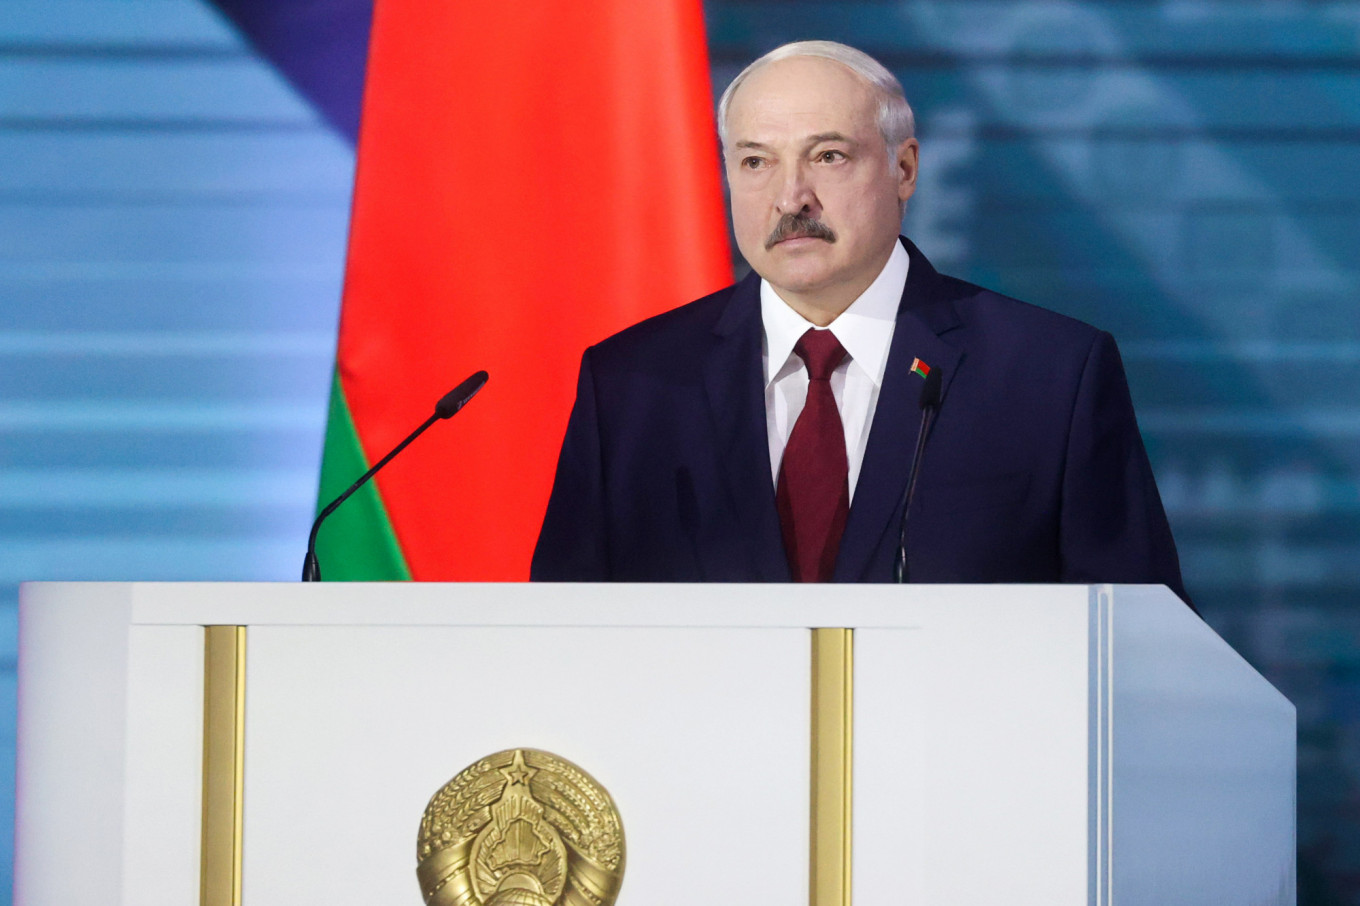 Belarus Leader Claims Opposition ‘Massacre’ Plot Before Vote